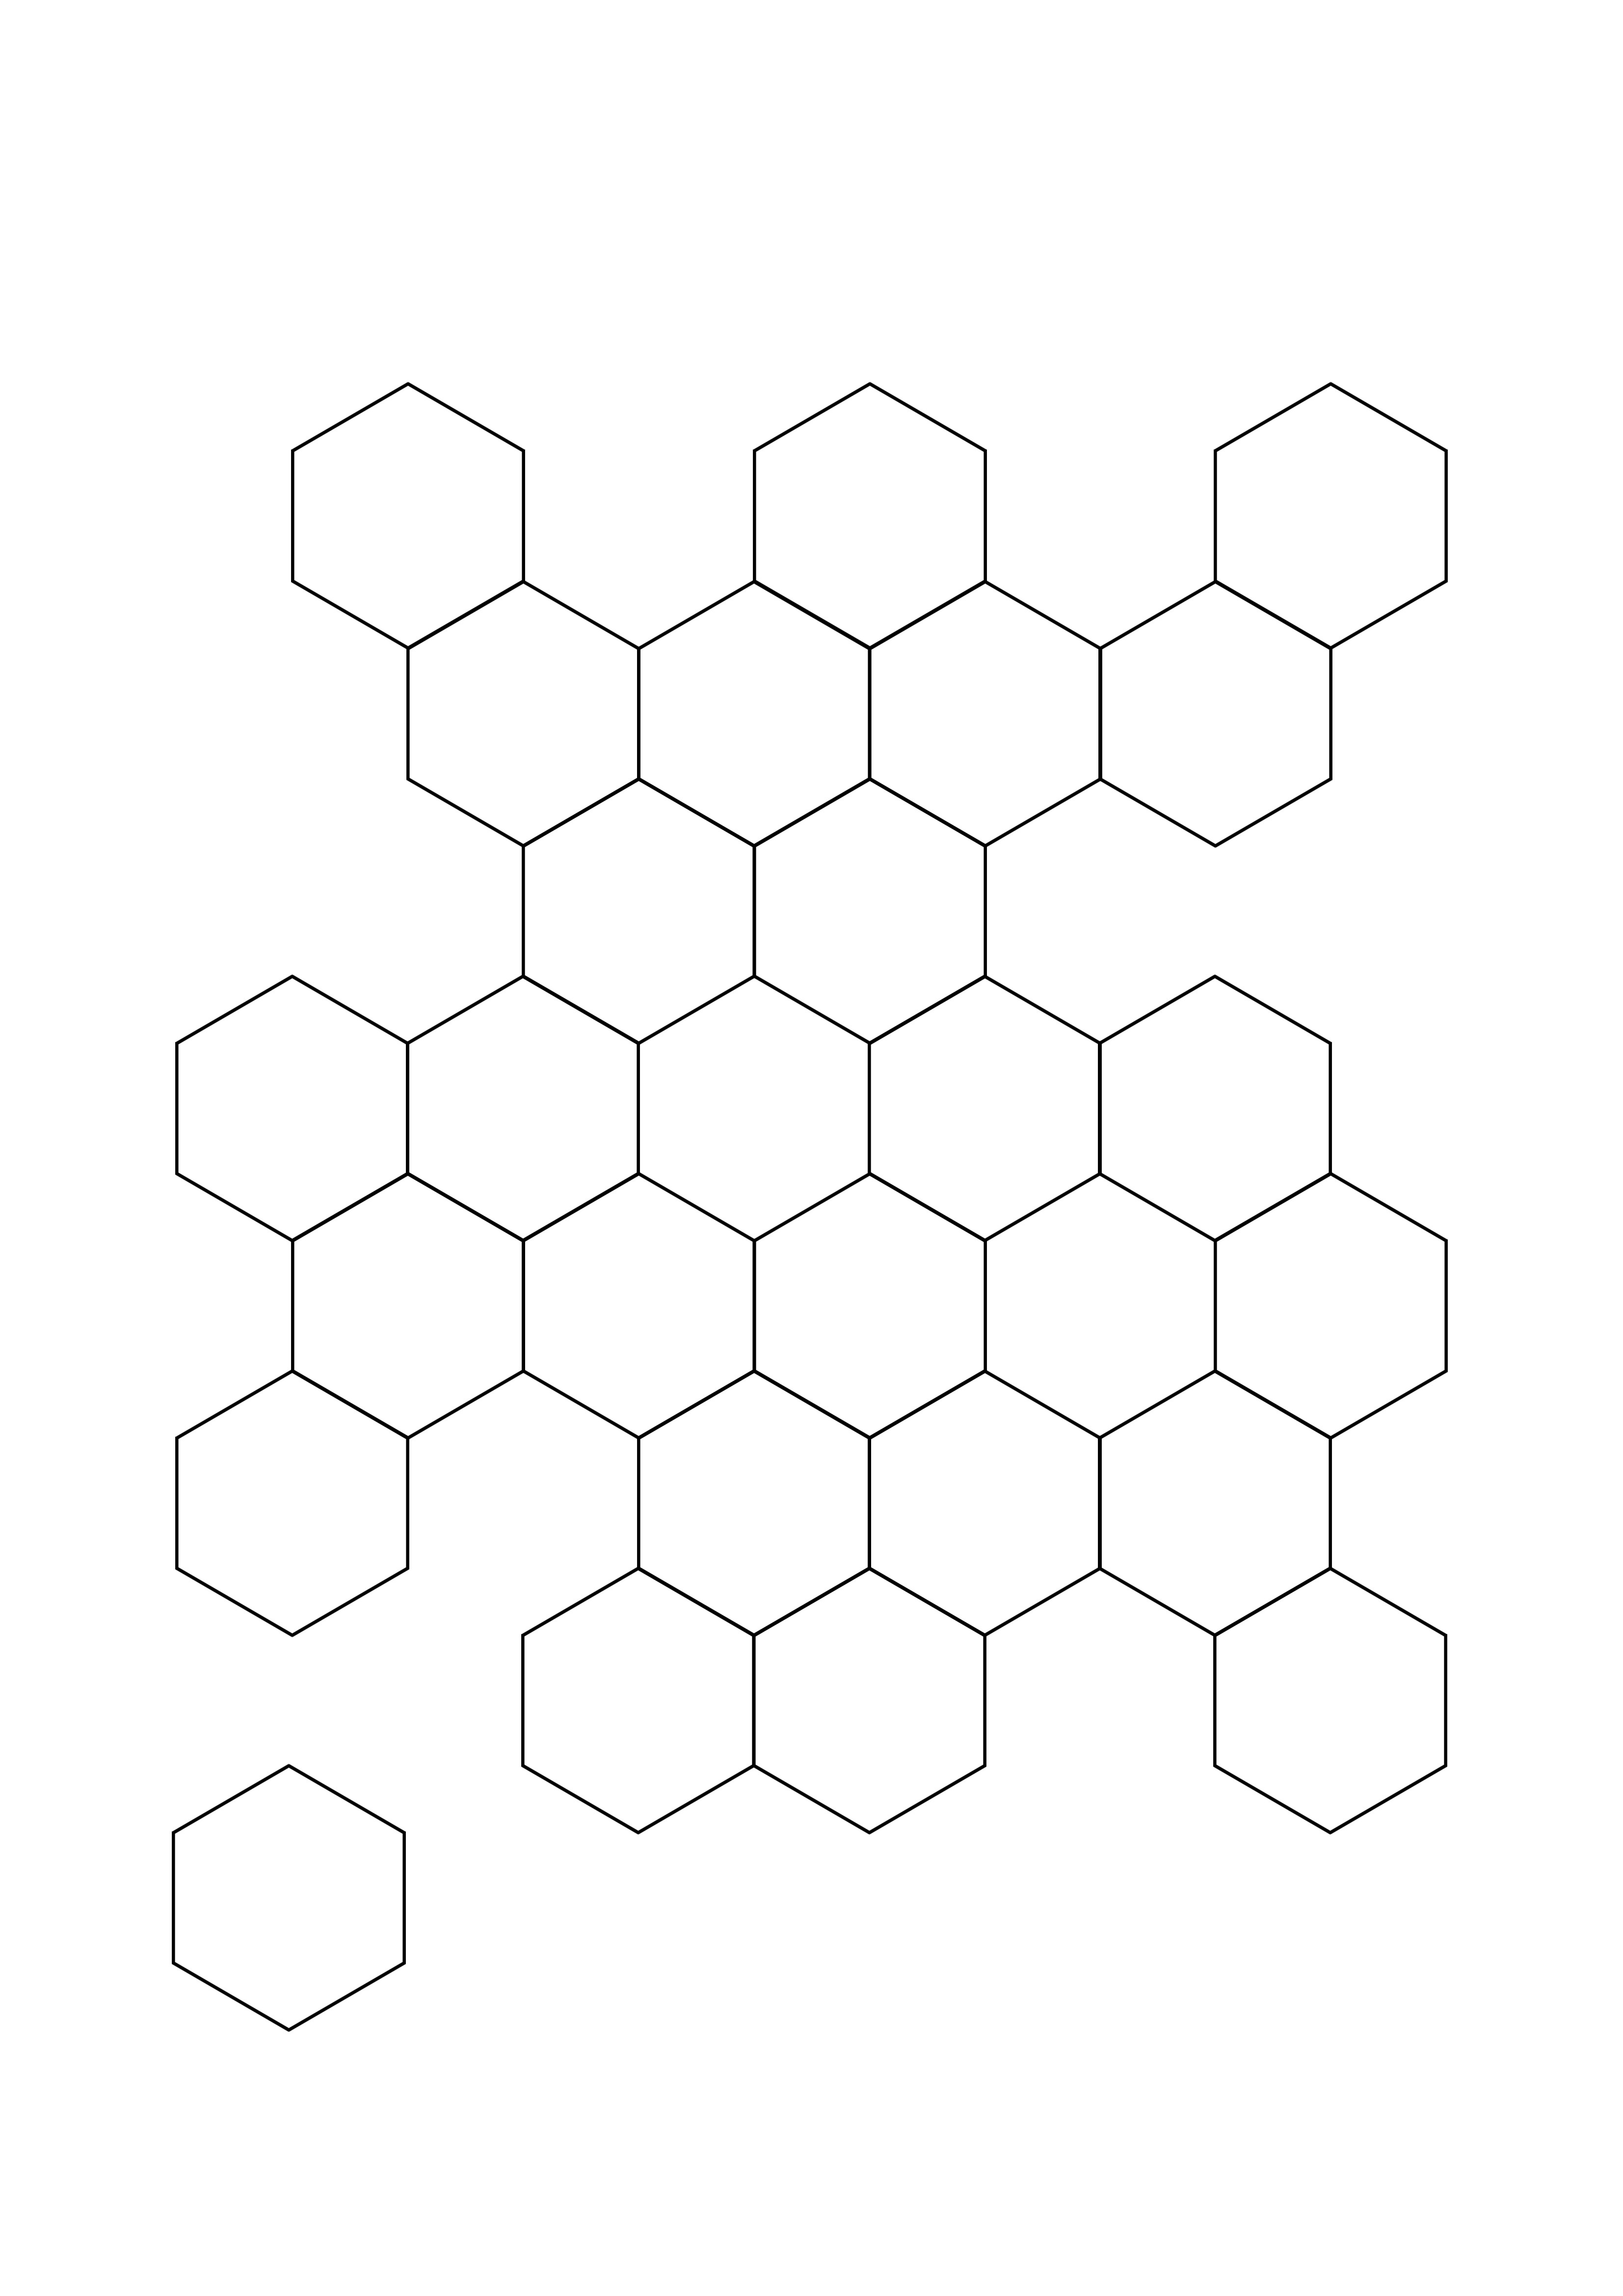 Hexagon Honeycomb Tessellation tulostettavaksi tai ladattavaksi ilmaiseksi väriarkille